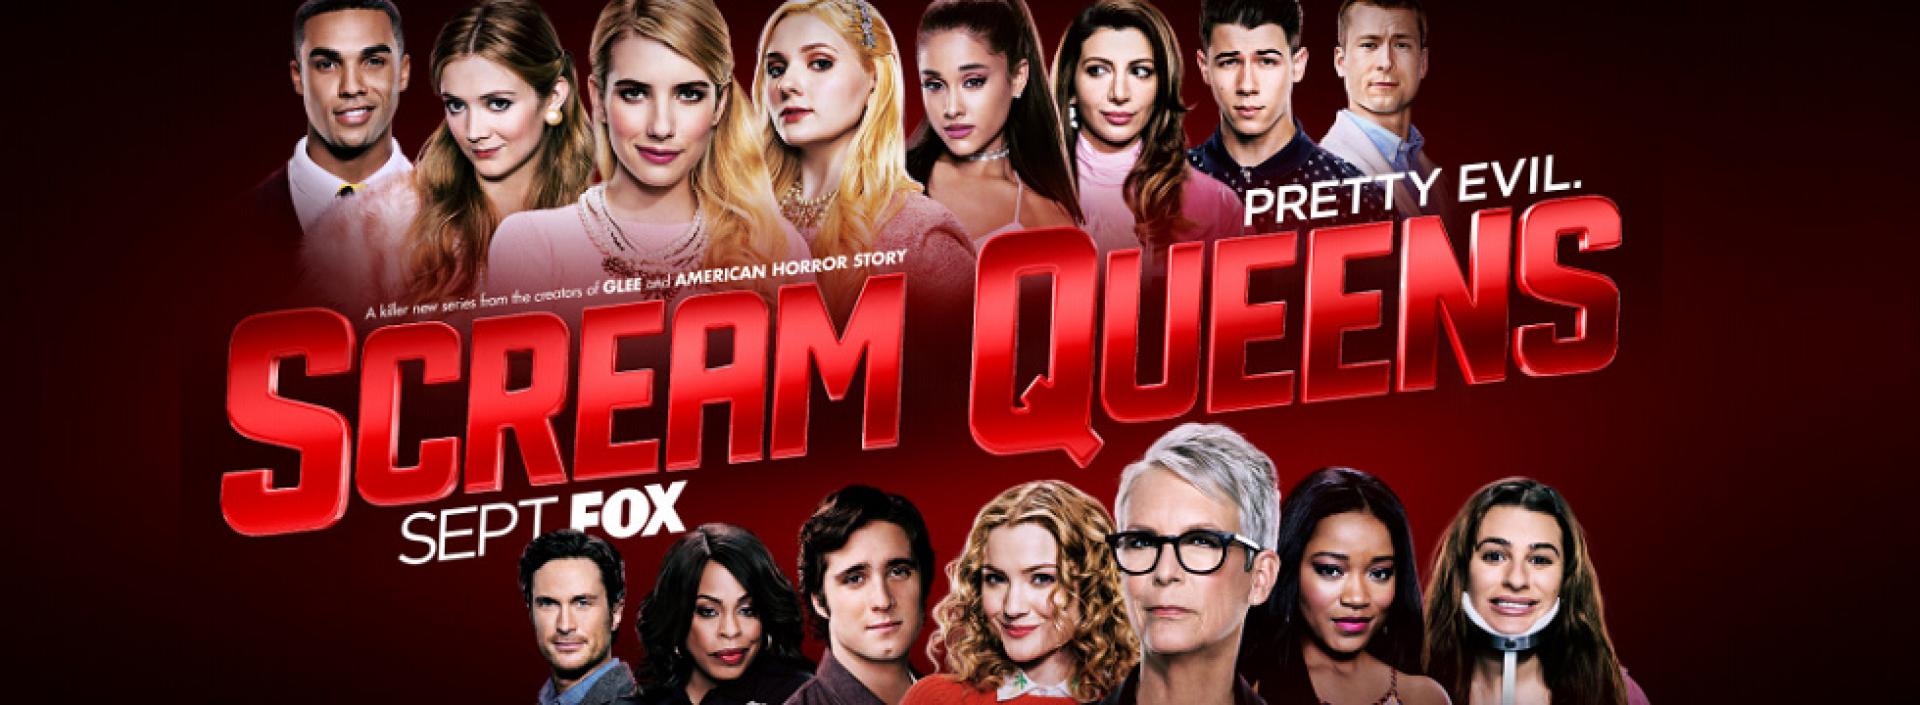 Scream Queens 1x09